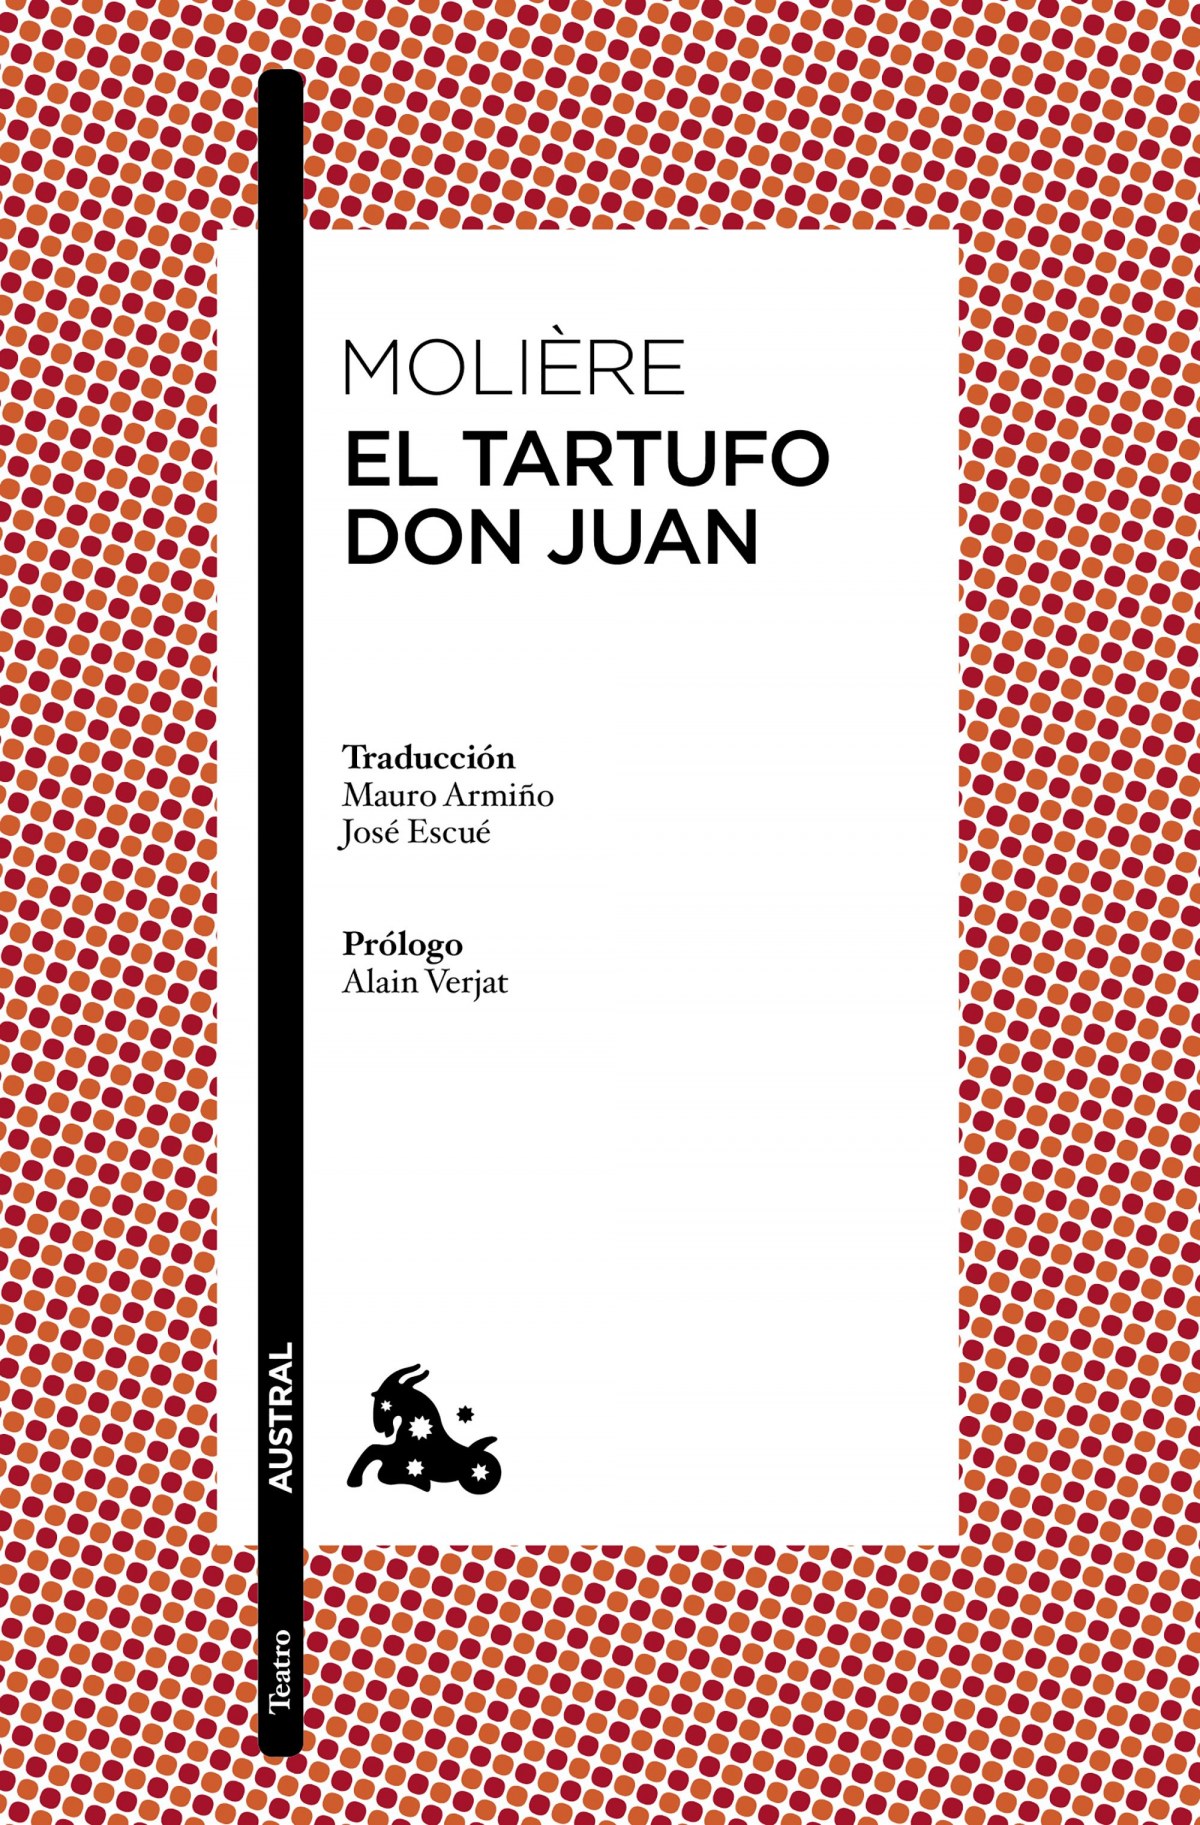 Don juan/tartufo - Moliere